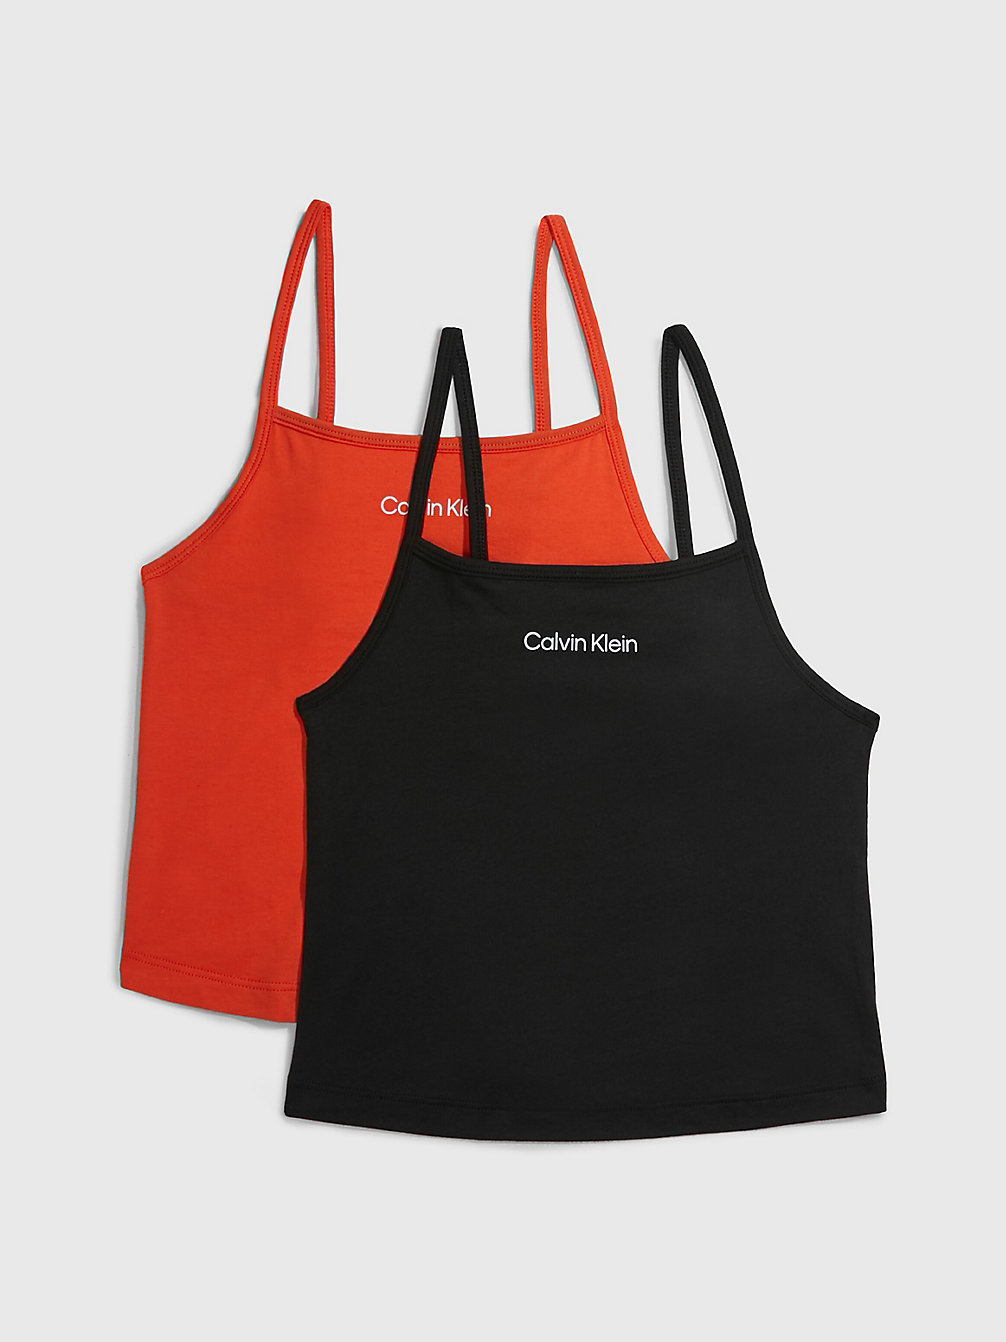 ACIDORANGE/PVHBLACK 2 Pack Tank Tops - Modern Cotton undefined girls Calvin Klein